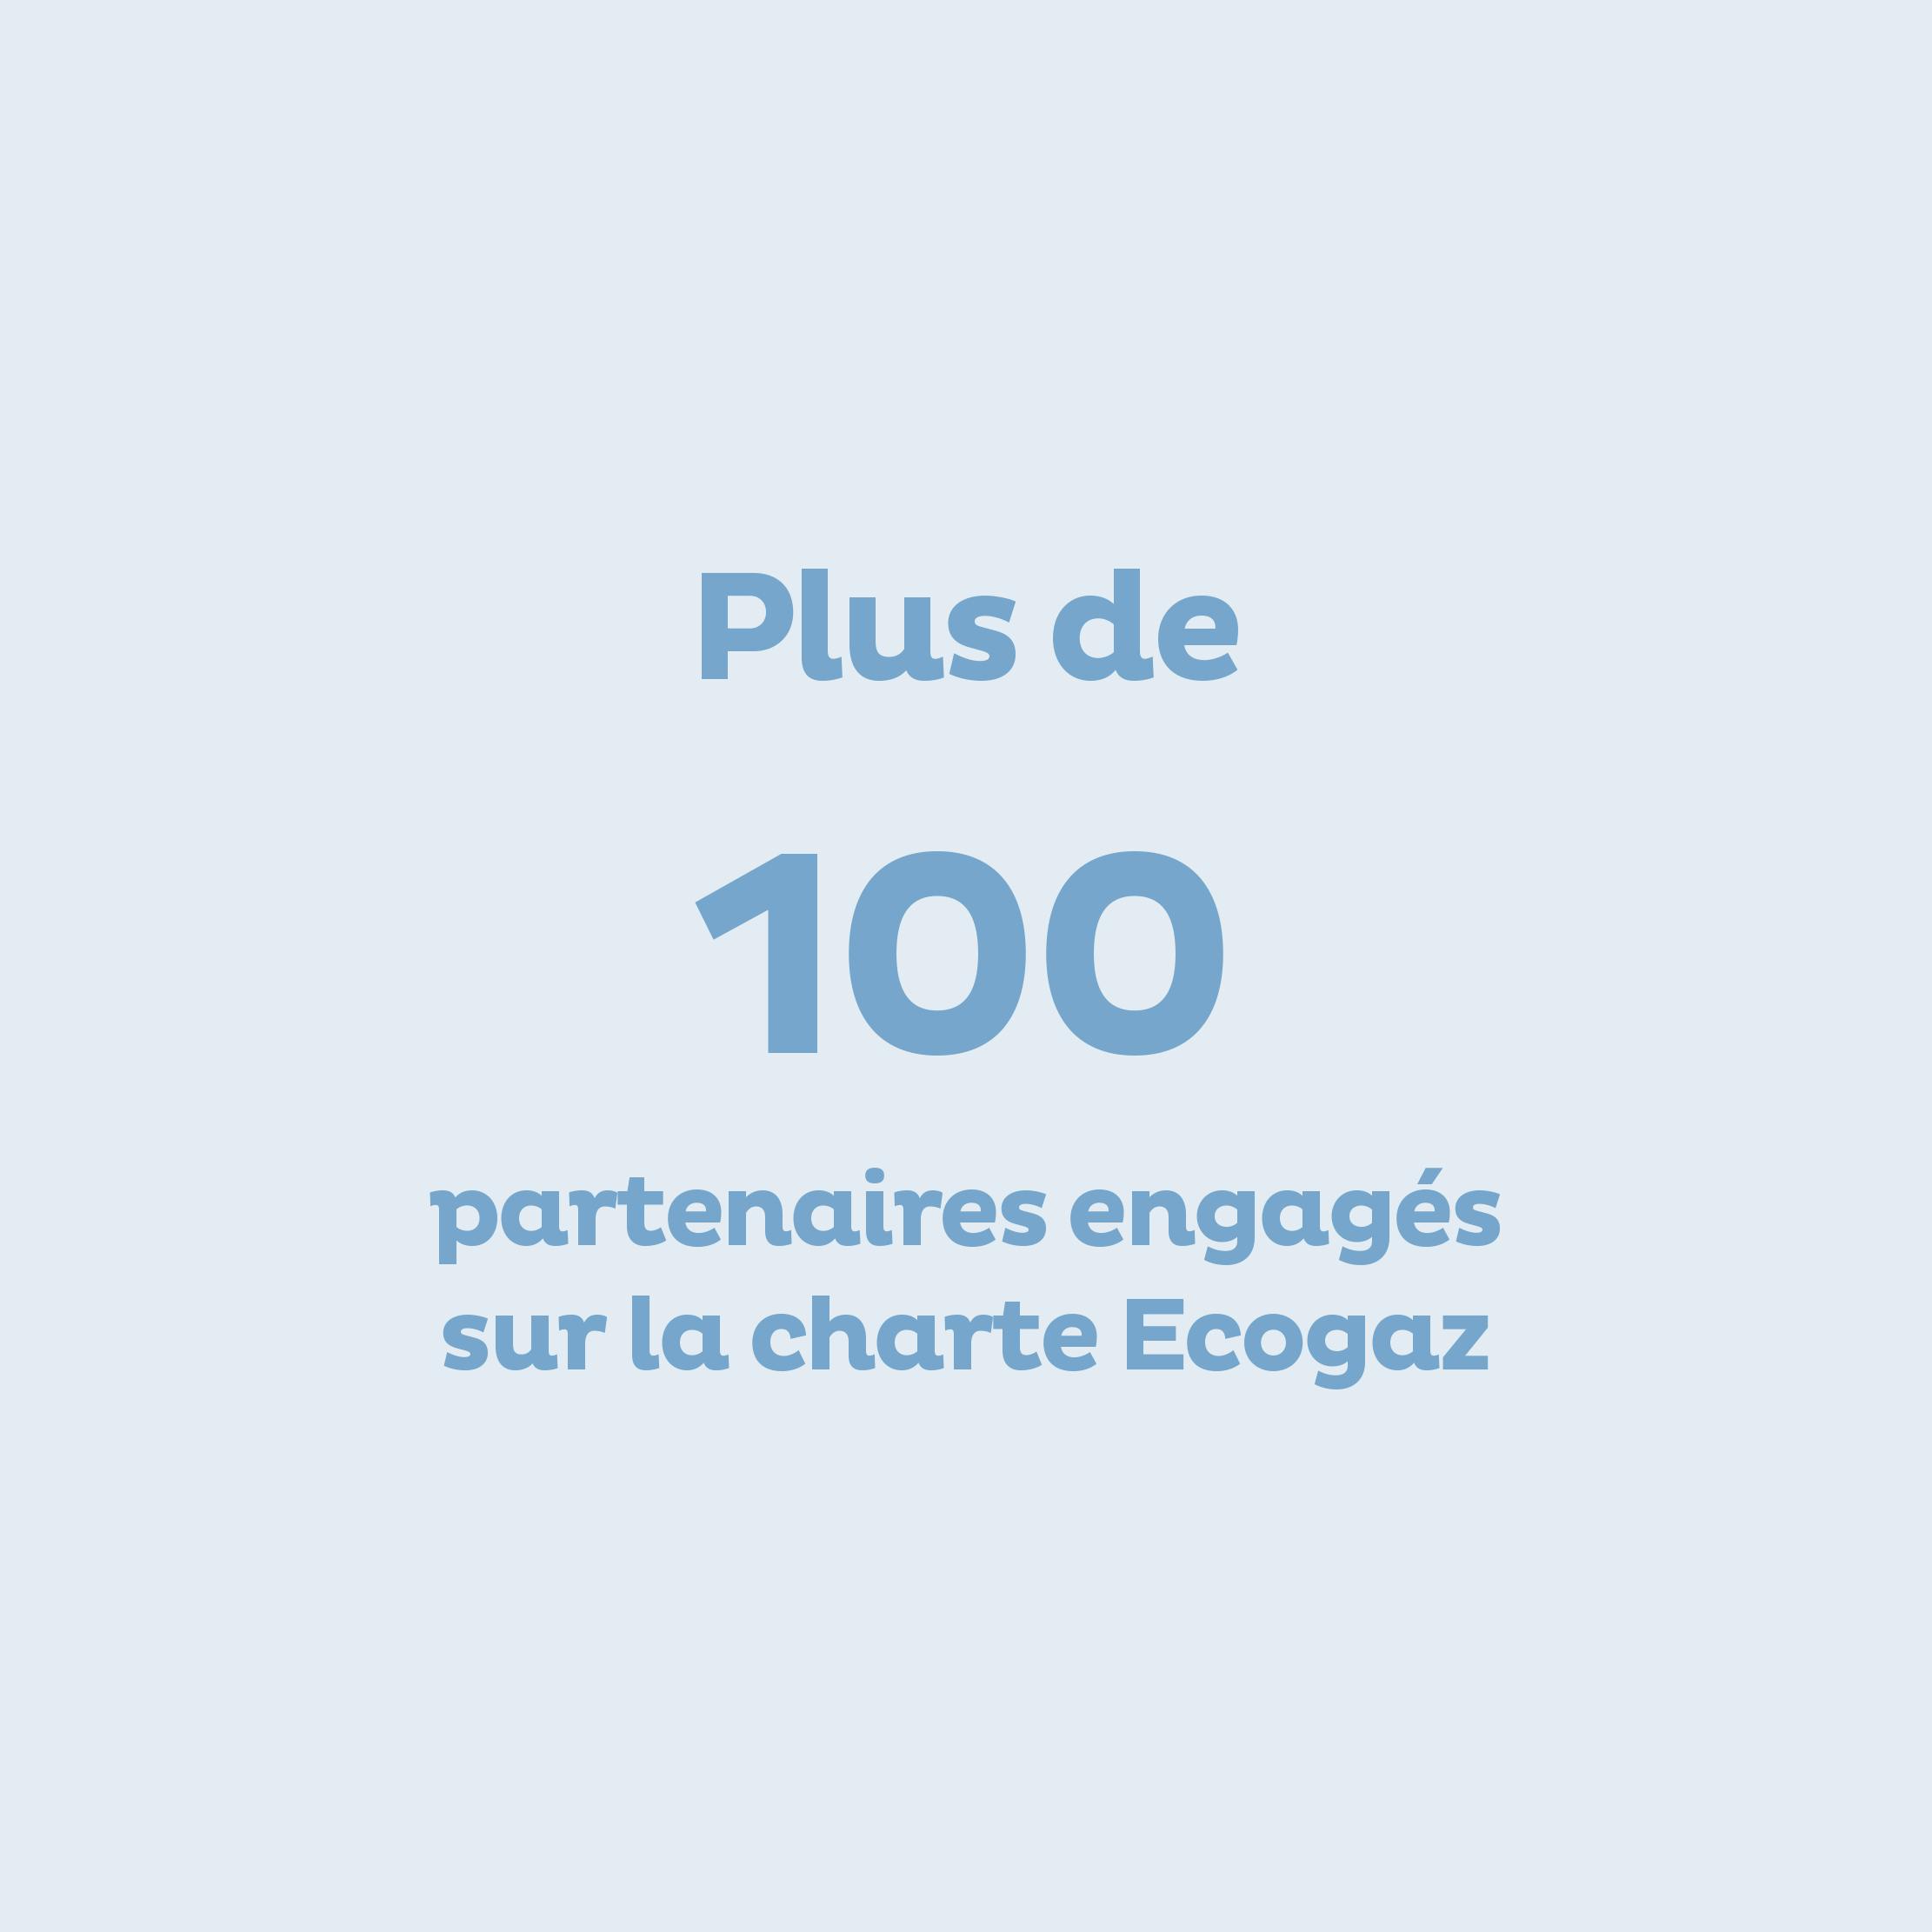 Plus de 100 partenaires engagés sur la charte Ecogaz à fin 2022.